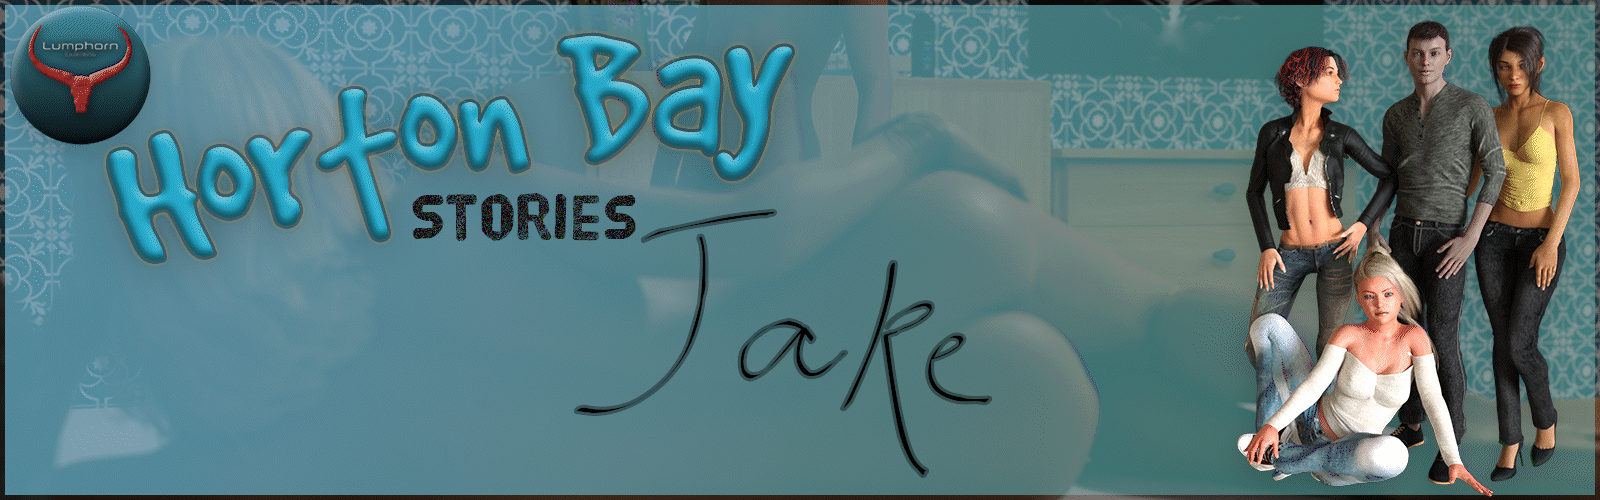 Download Horton Bay Stories - Jake - Version 0.3.5.3 image pic